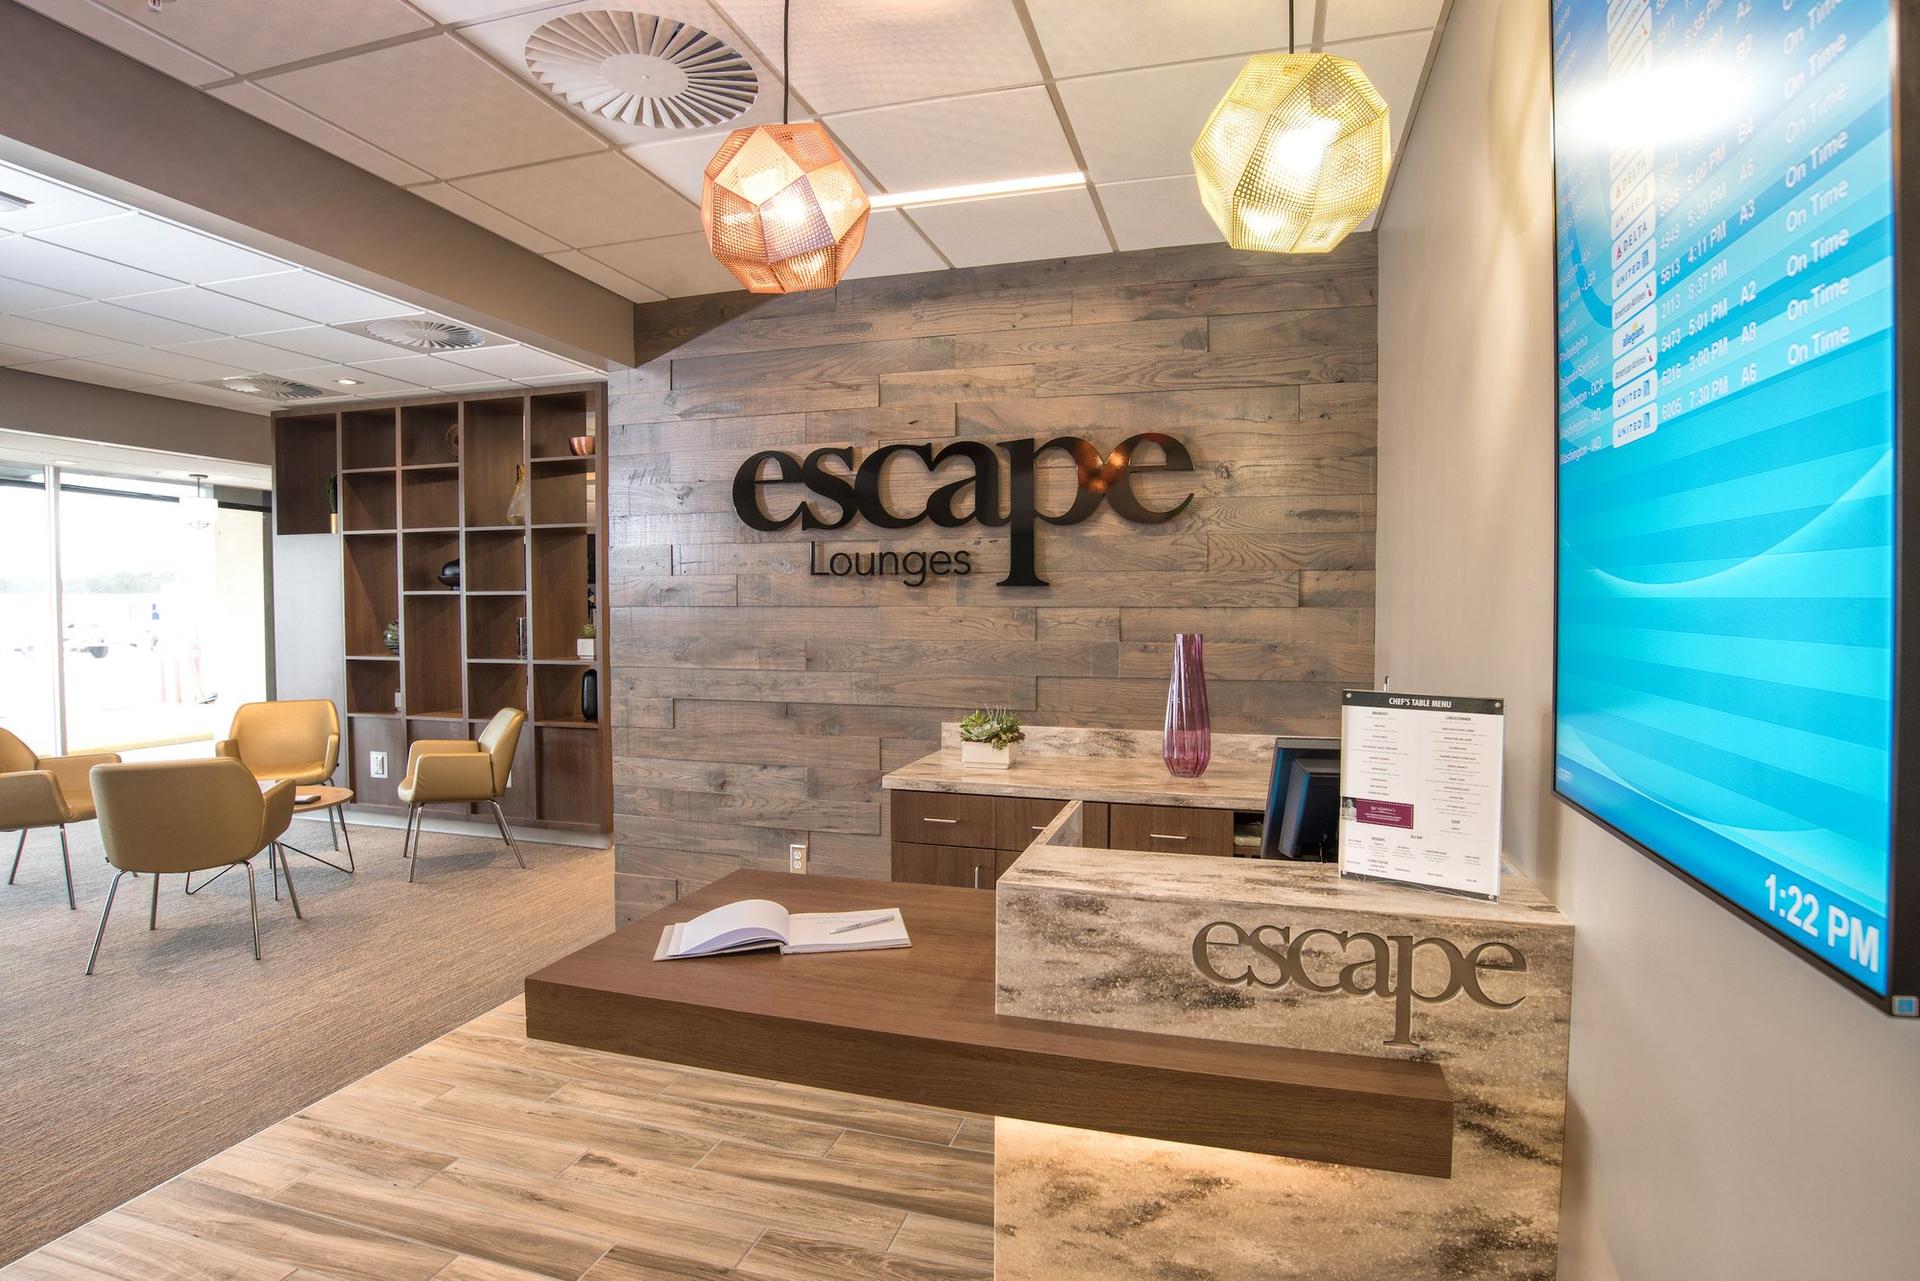 Escape Lounges - The Centurion® Studio Partner image 14 of 19